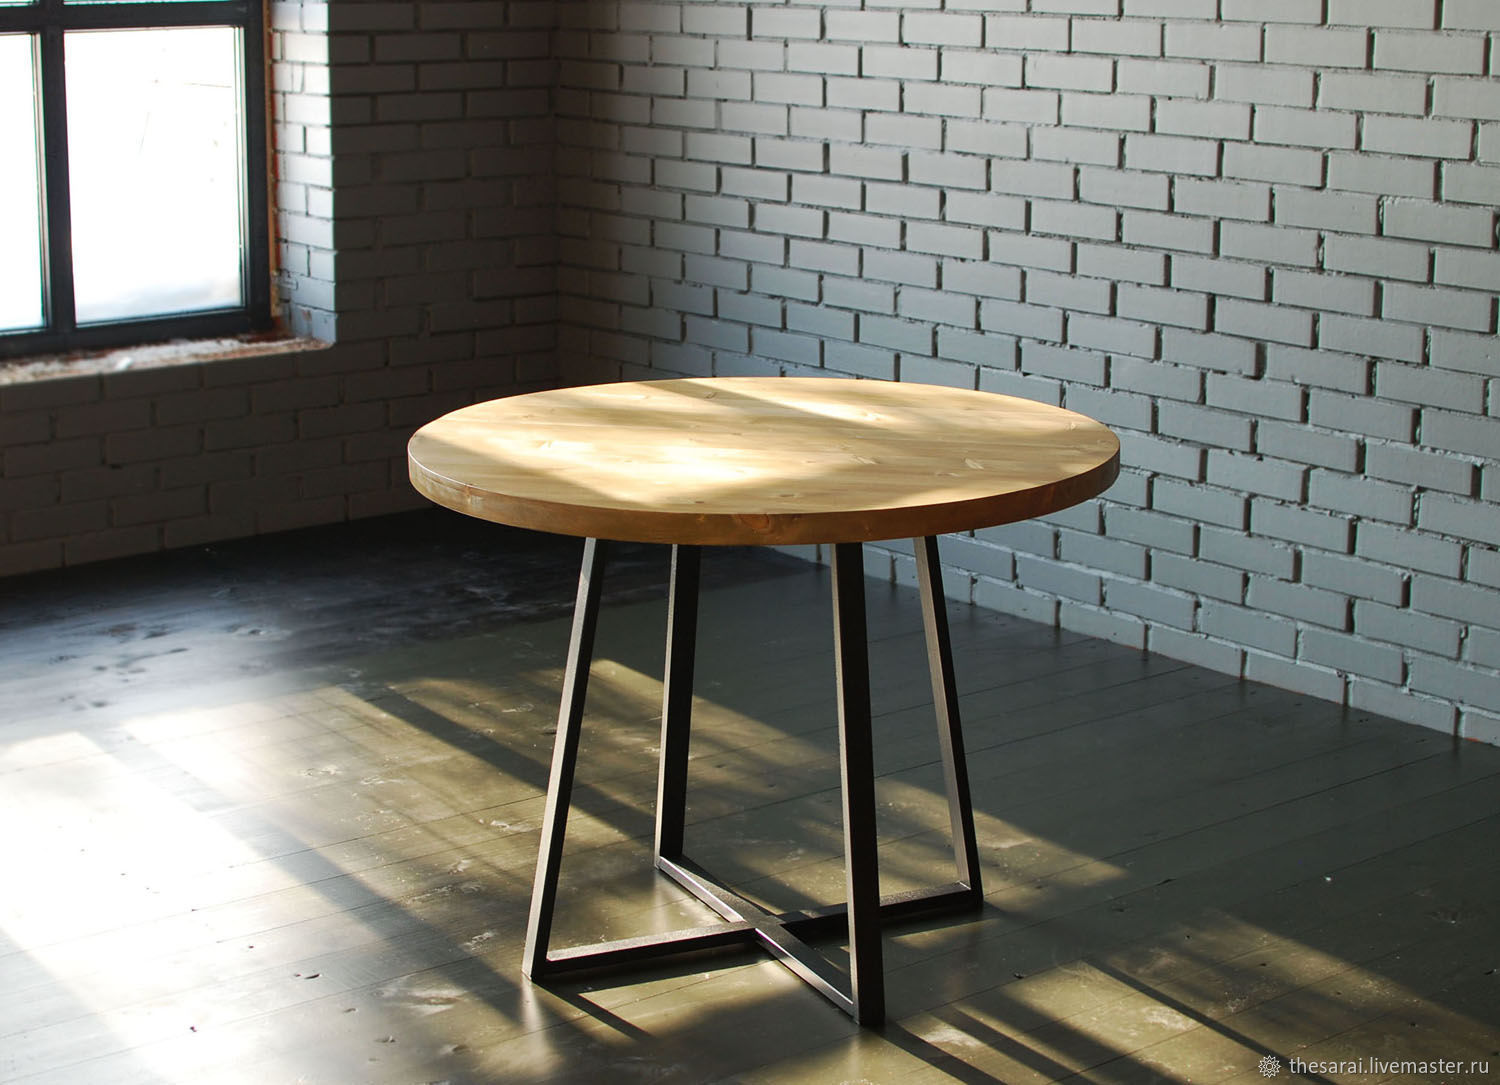 Round plus. Круглый стол в стиле лофт. Круглый обеденный стол в стиле лофт. Круглый столик в стиле лофт. Стол в стиле лофт круглый раскладной.